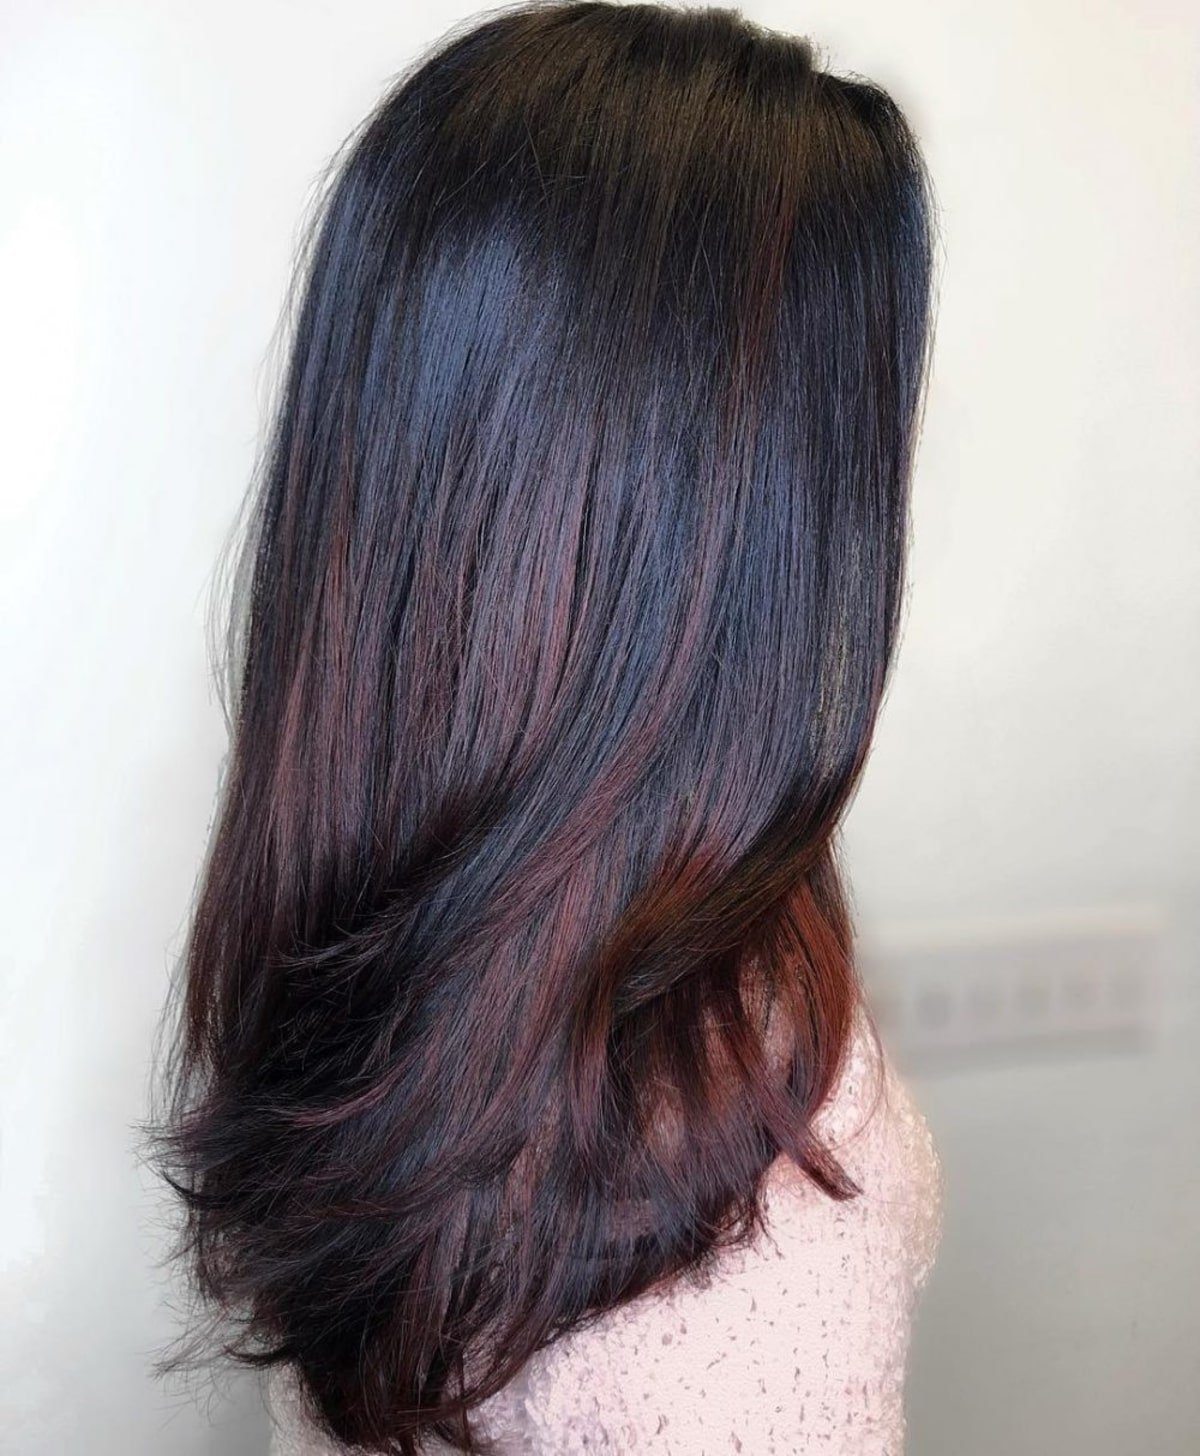 Fashionable mahogany brown highlights on long black hair